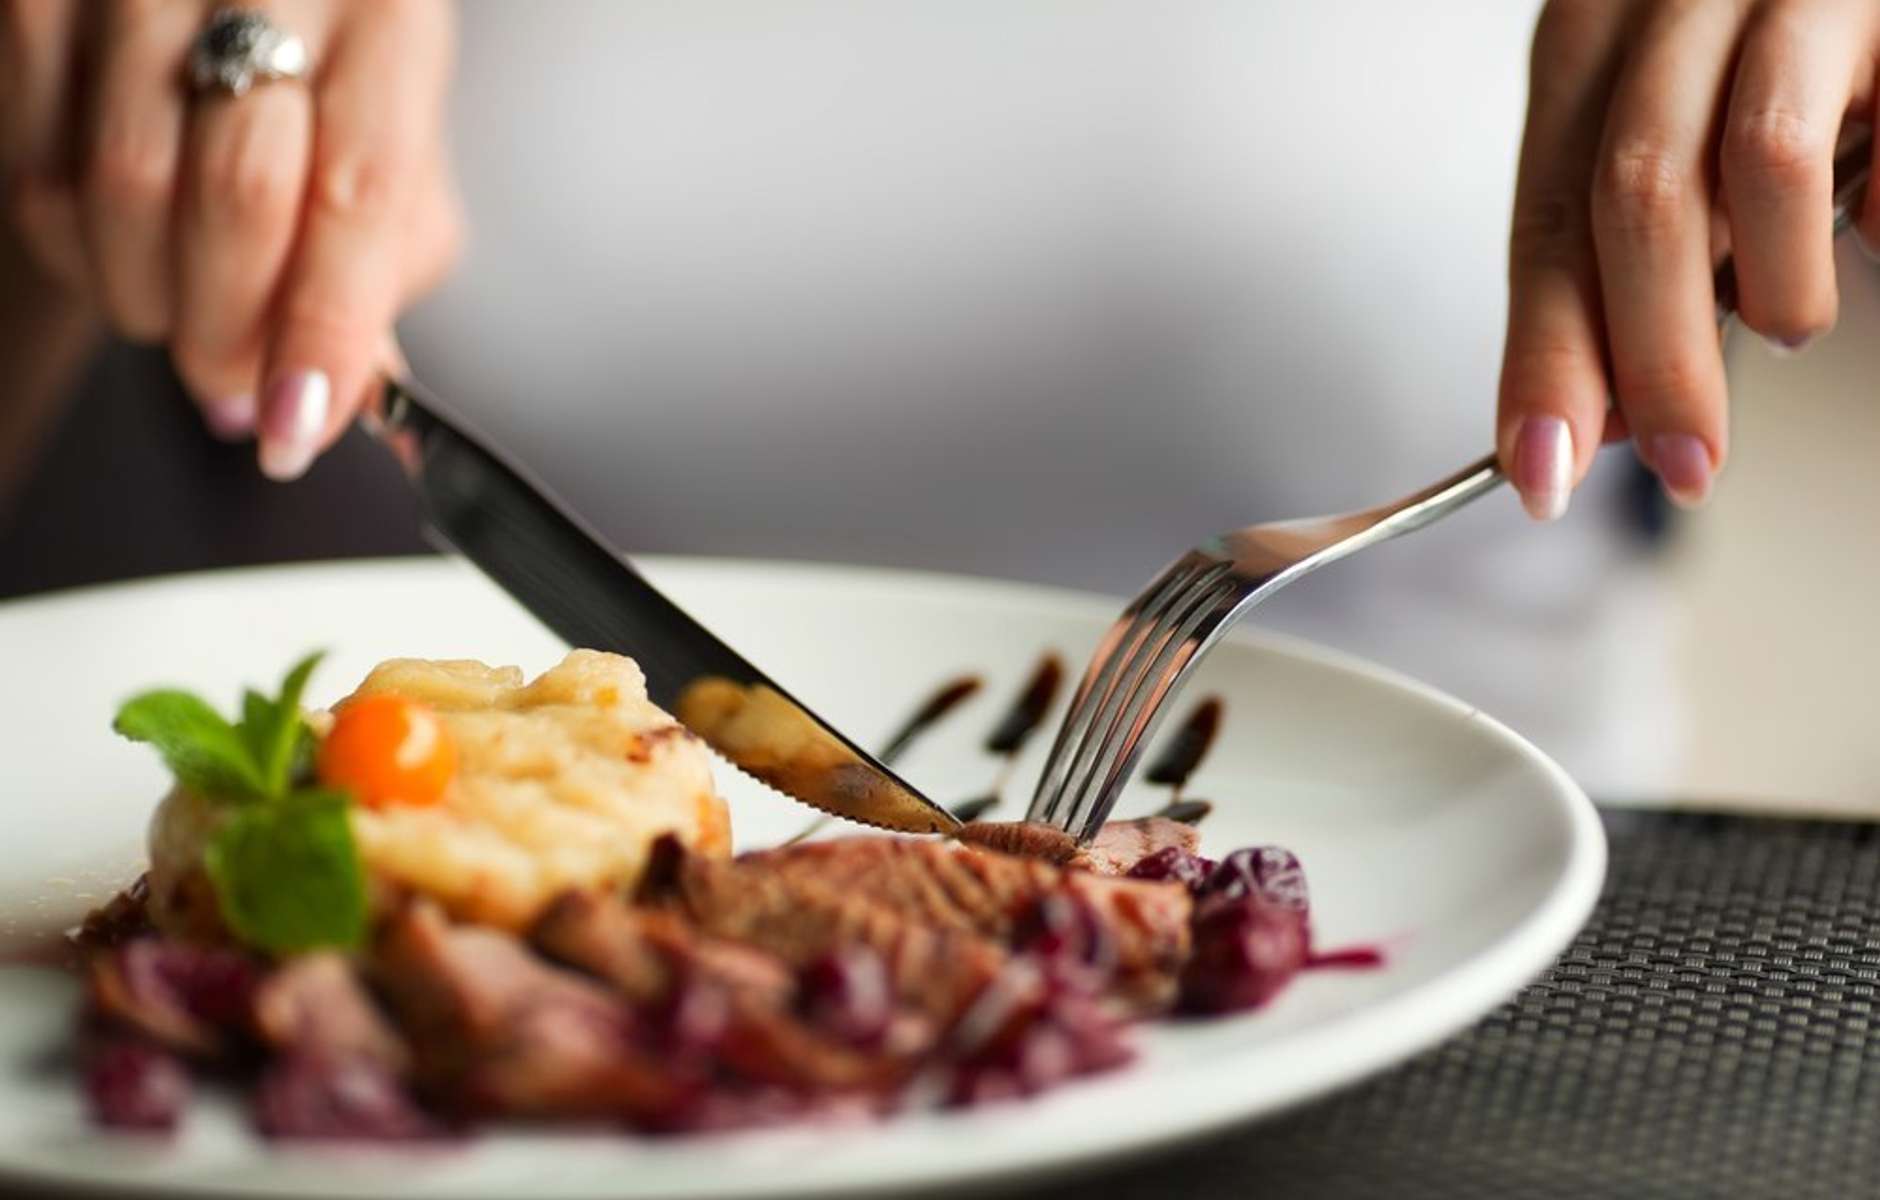 Еда с вилкой и ножом. Еда в ресторане. Тарелка с едой в руках. Кушать вилкой и ножом.